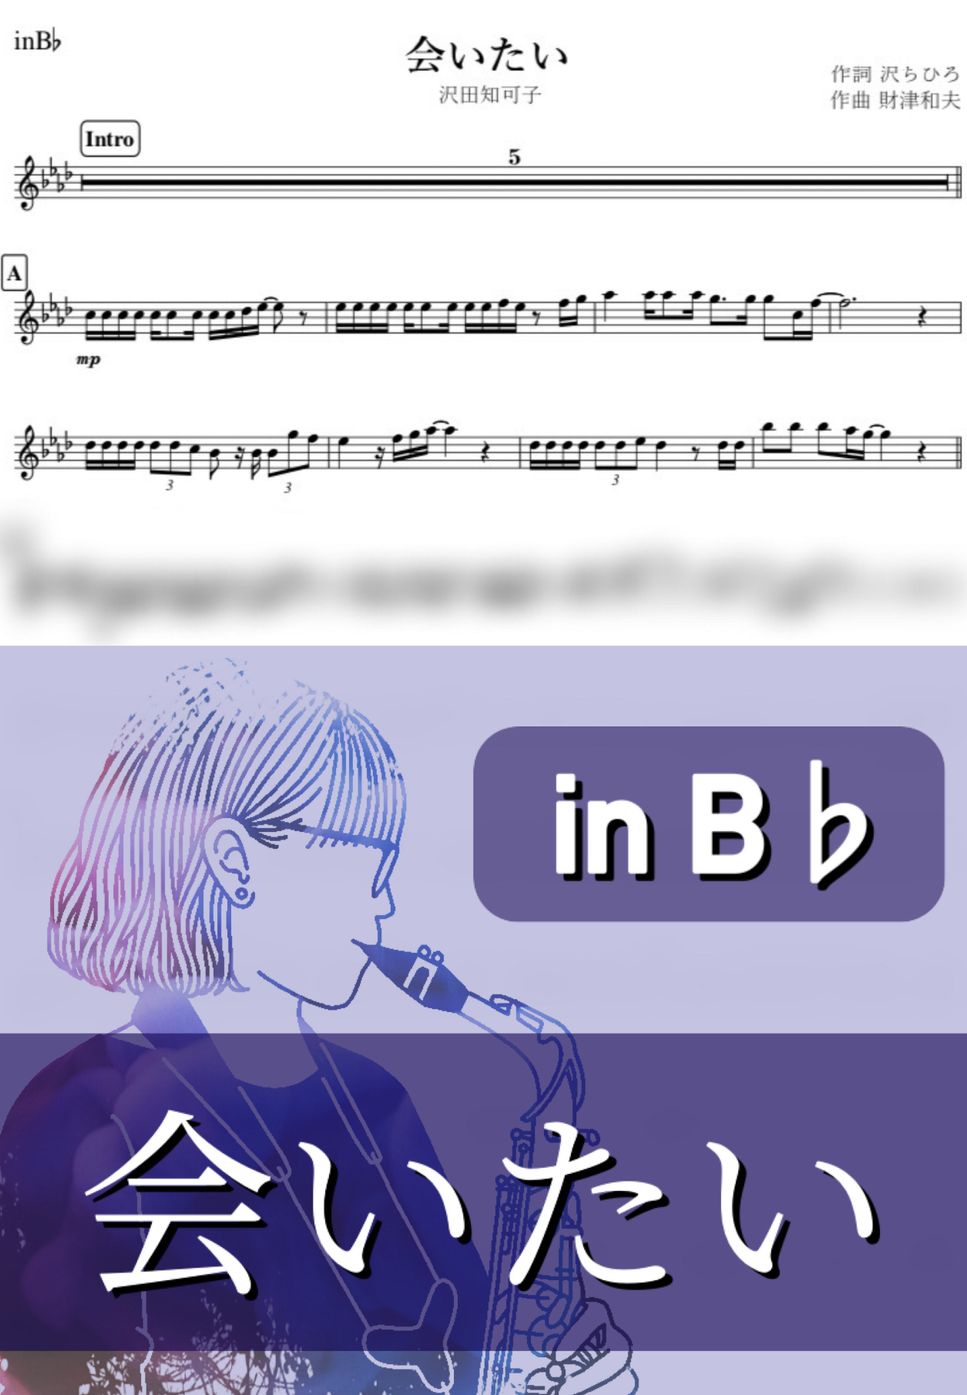 沢田知可子 - 会いたい (B♭) by kanamusic